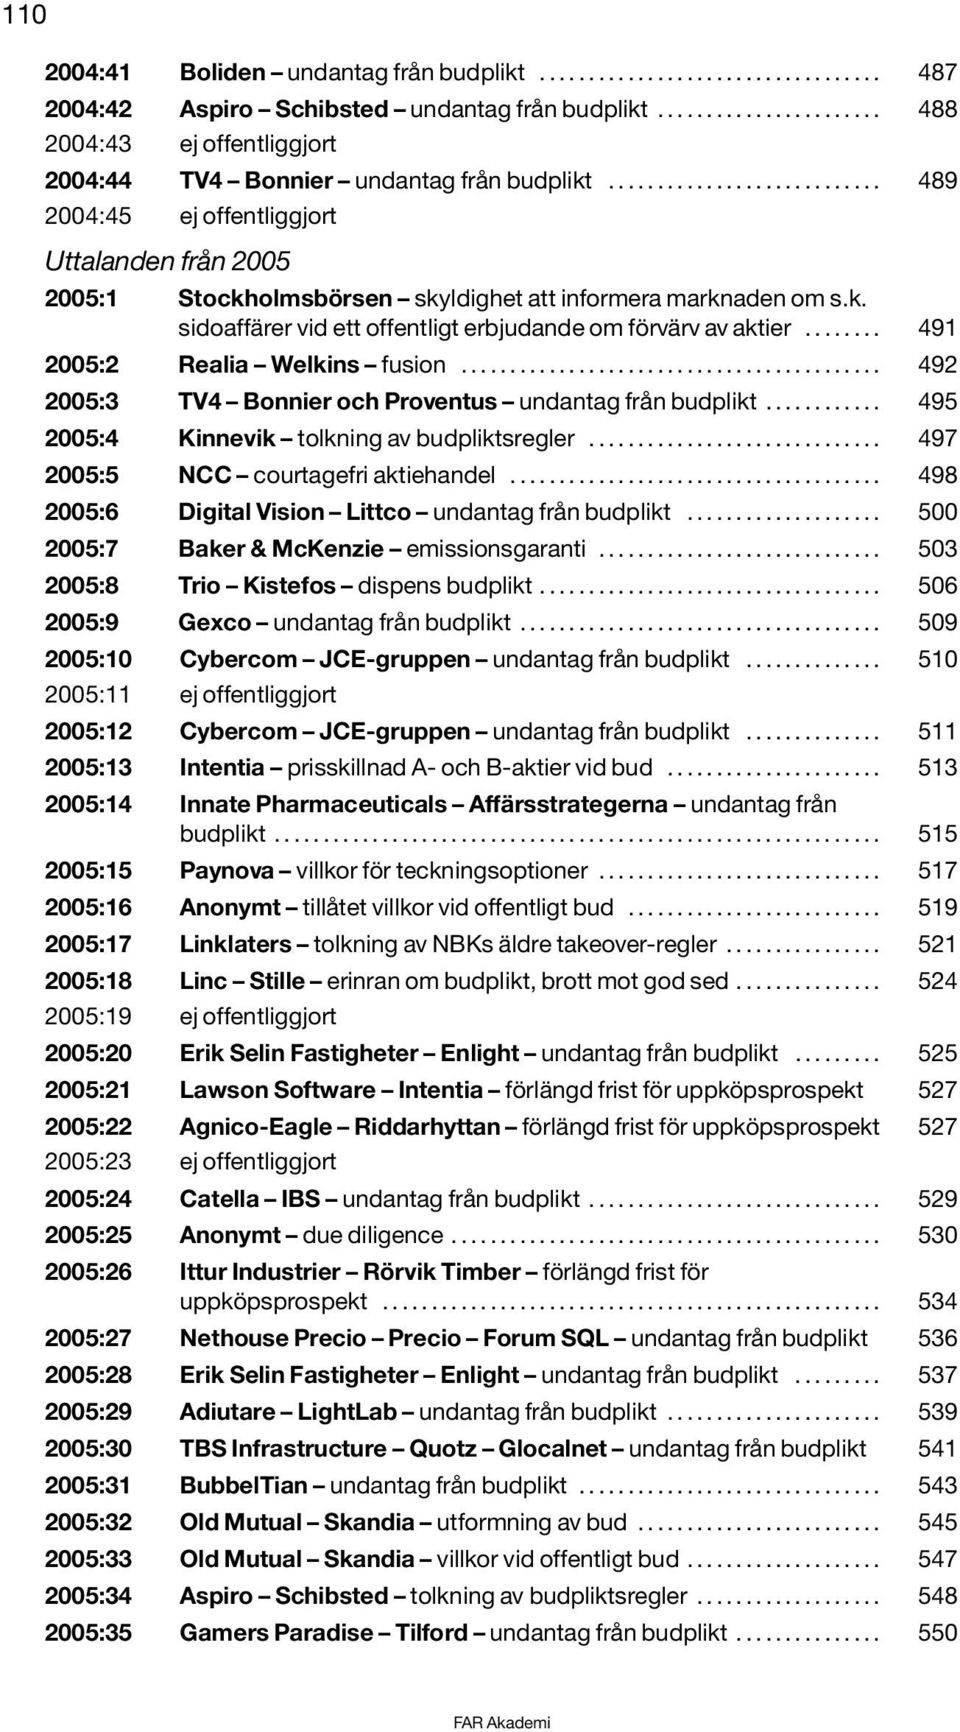 ........................... 489 2004:45 ej offentliggjort Uttalanden från 2005 2005:1 Stockholmsbörsen skyldighet att informera marknaden om s.k. sidoaffärer vid ett offentligt erbjudande om förvärv av aktier.